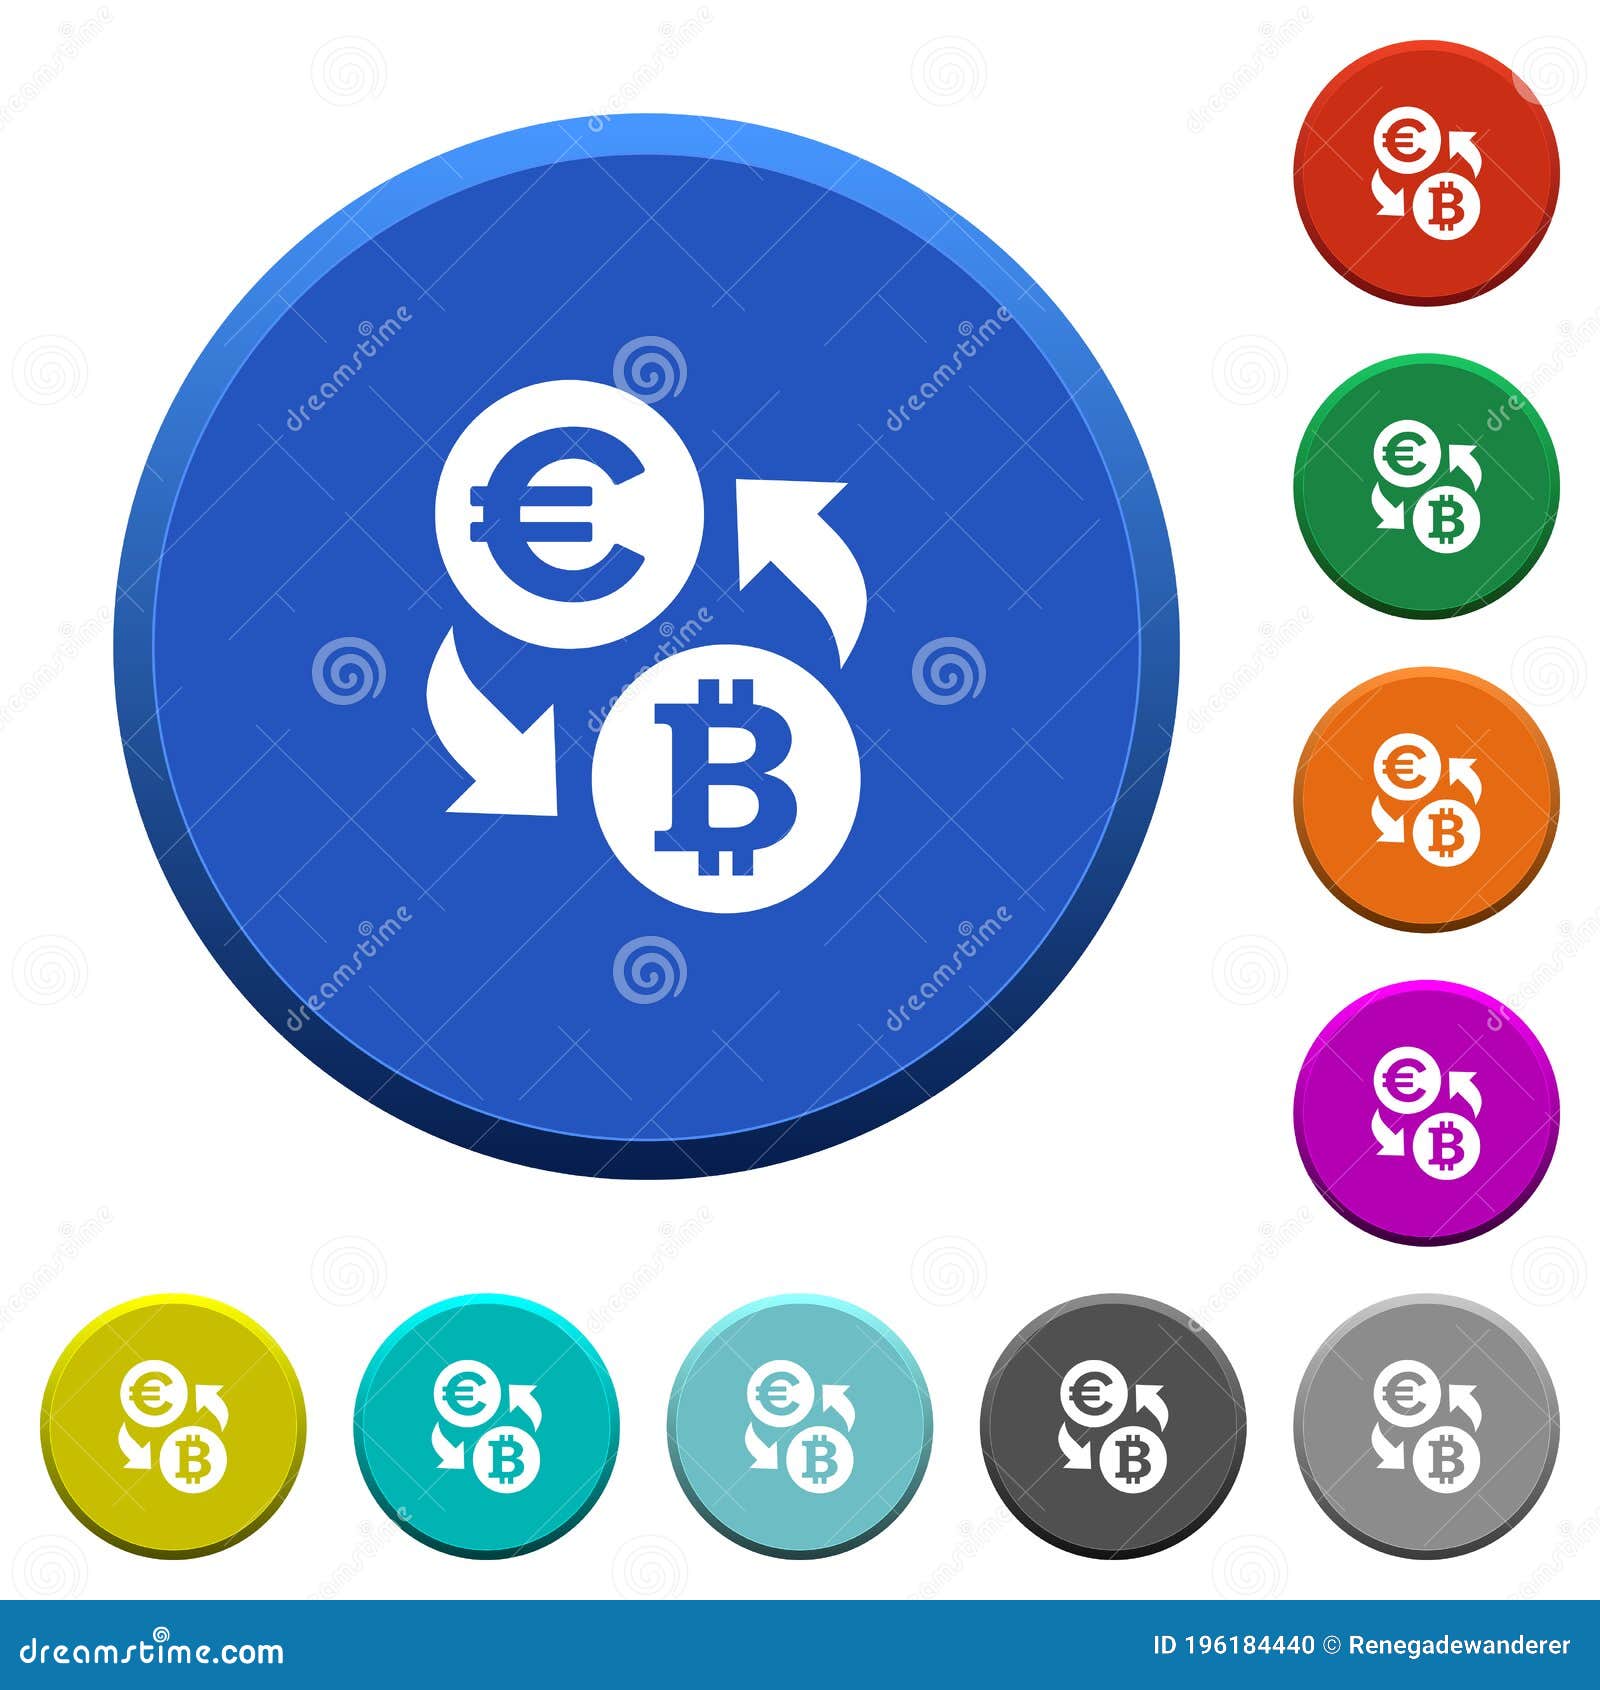 Обмен биткоин евро покупка на bitcoin cash vs bitcoin technology